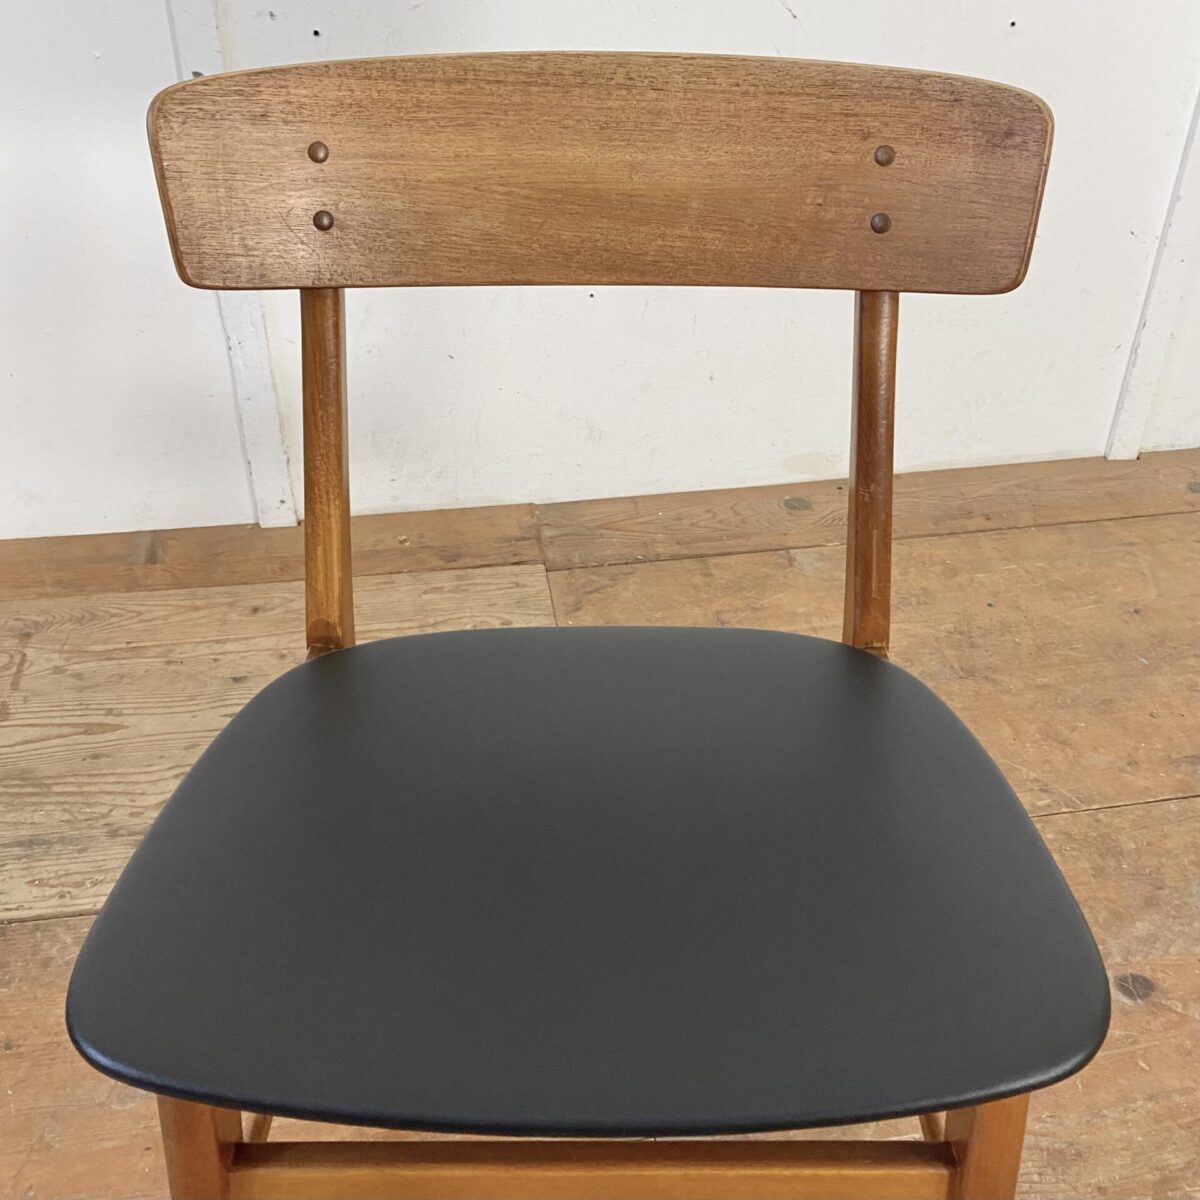 Deuxieme.shop Einzelner Esszimmer Stuhl von Farstrup Møbler, aus den 60er Jahren. Der Stuhl ist aus Buche Vollholz, die Rückenlehne ist mit Teakholz furniert. Sitzfläche mit schwarzem Kunstleder bezogen, bis auf ein paar kleine Kratzer und etwas Wasserflecken am Holzgestell, in gutem Vintage Zustand.